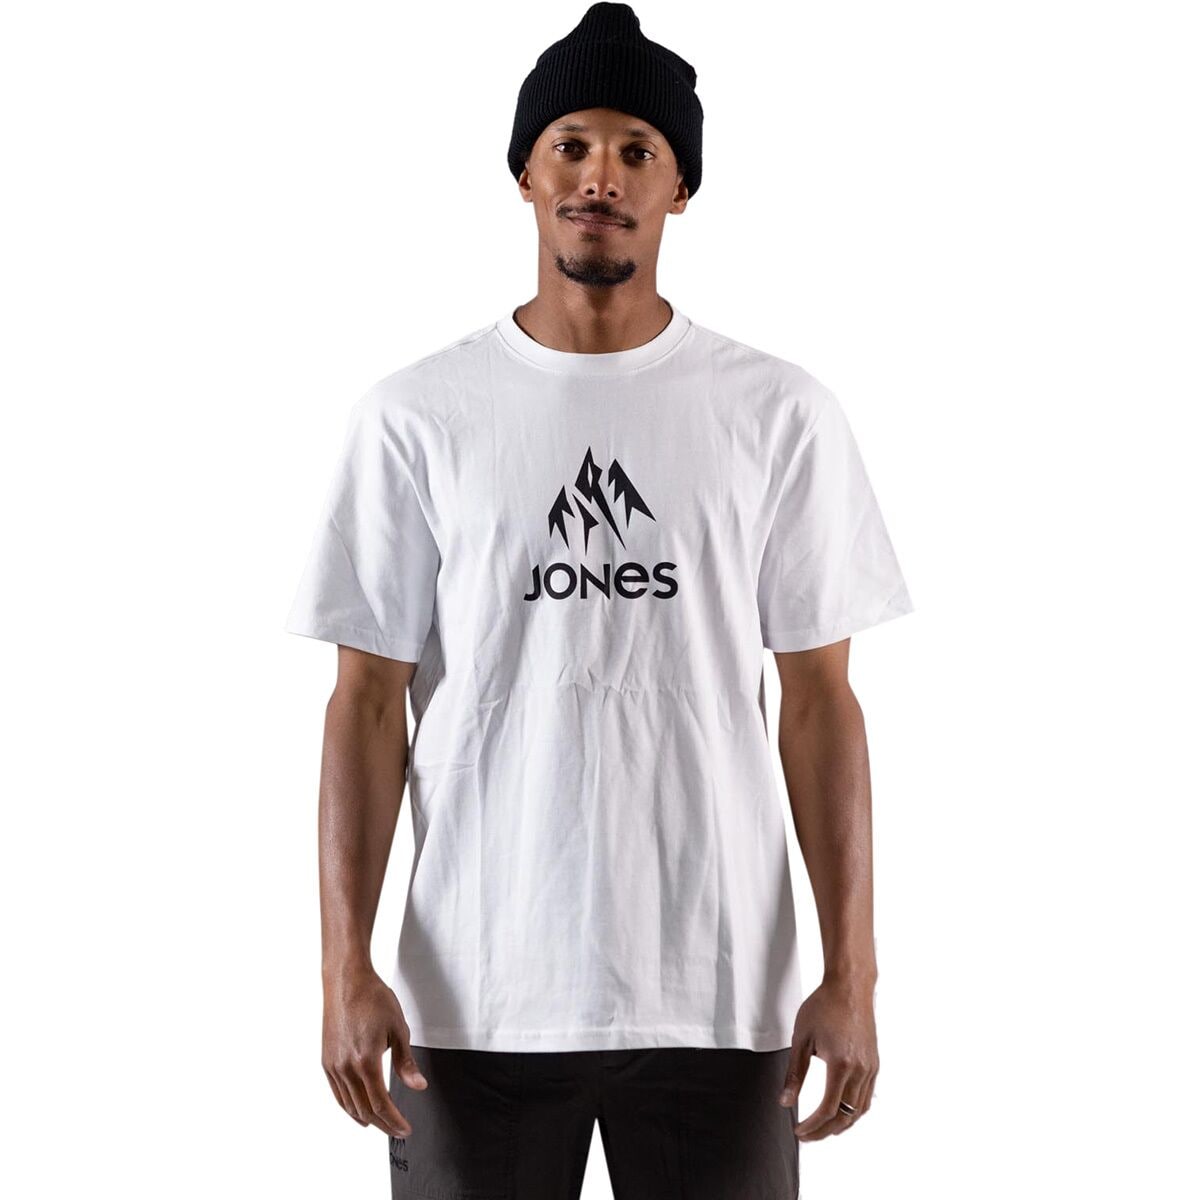 Jones Snowboards Truckee T-Shirt - Men's